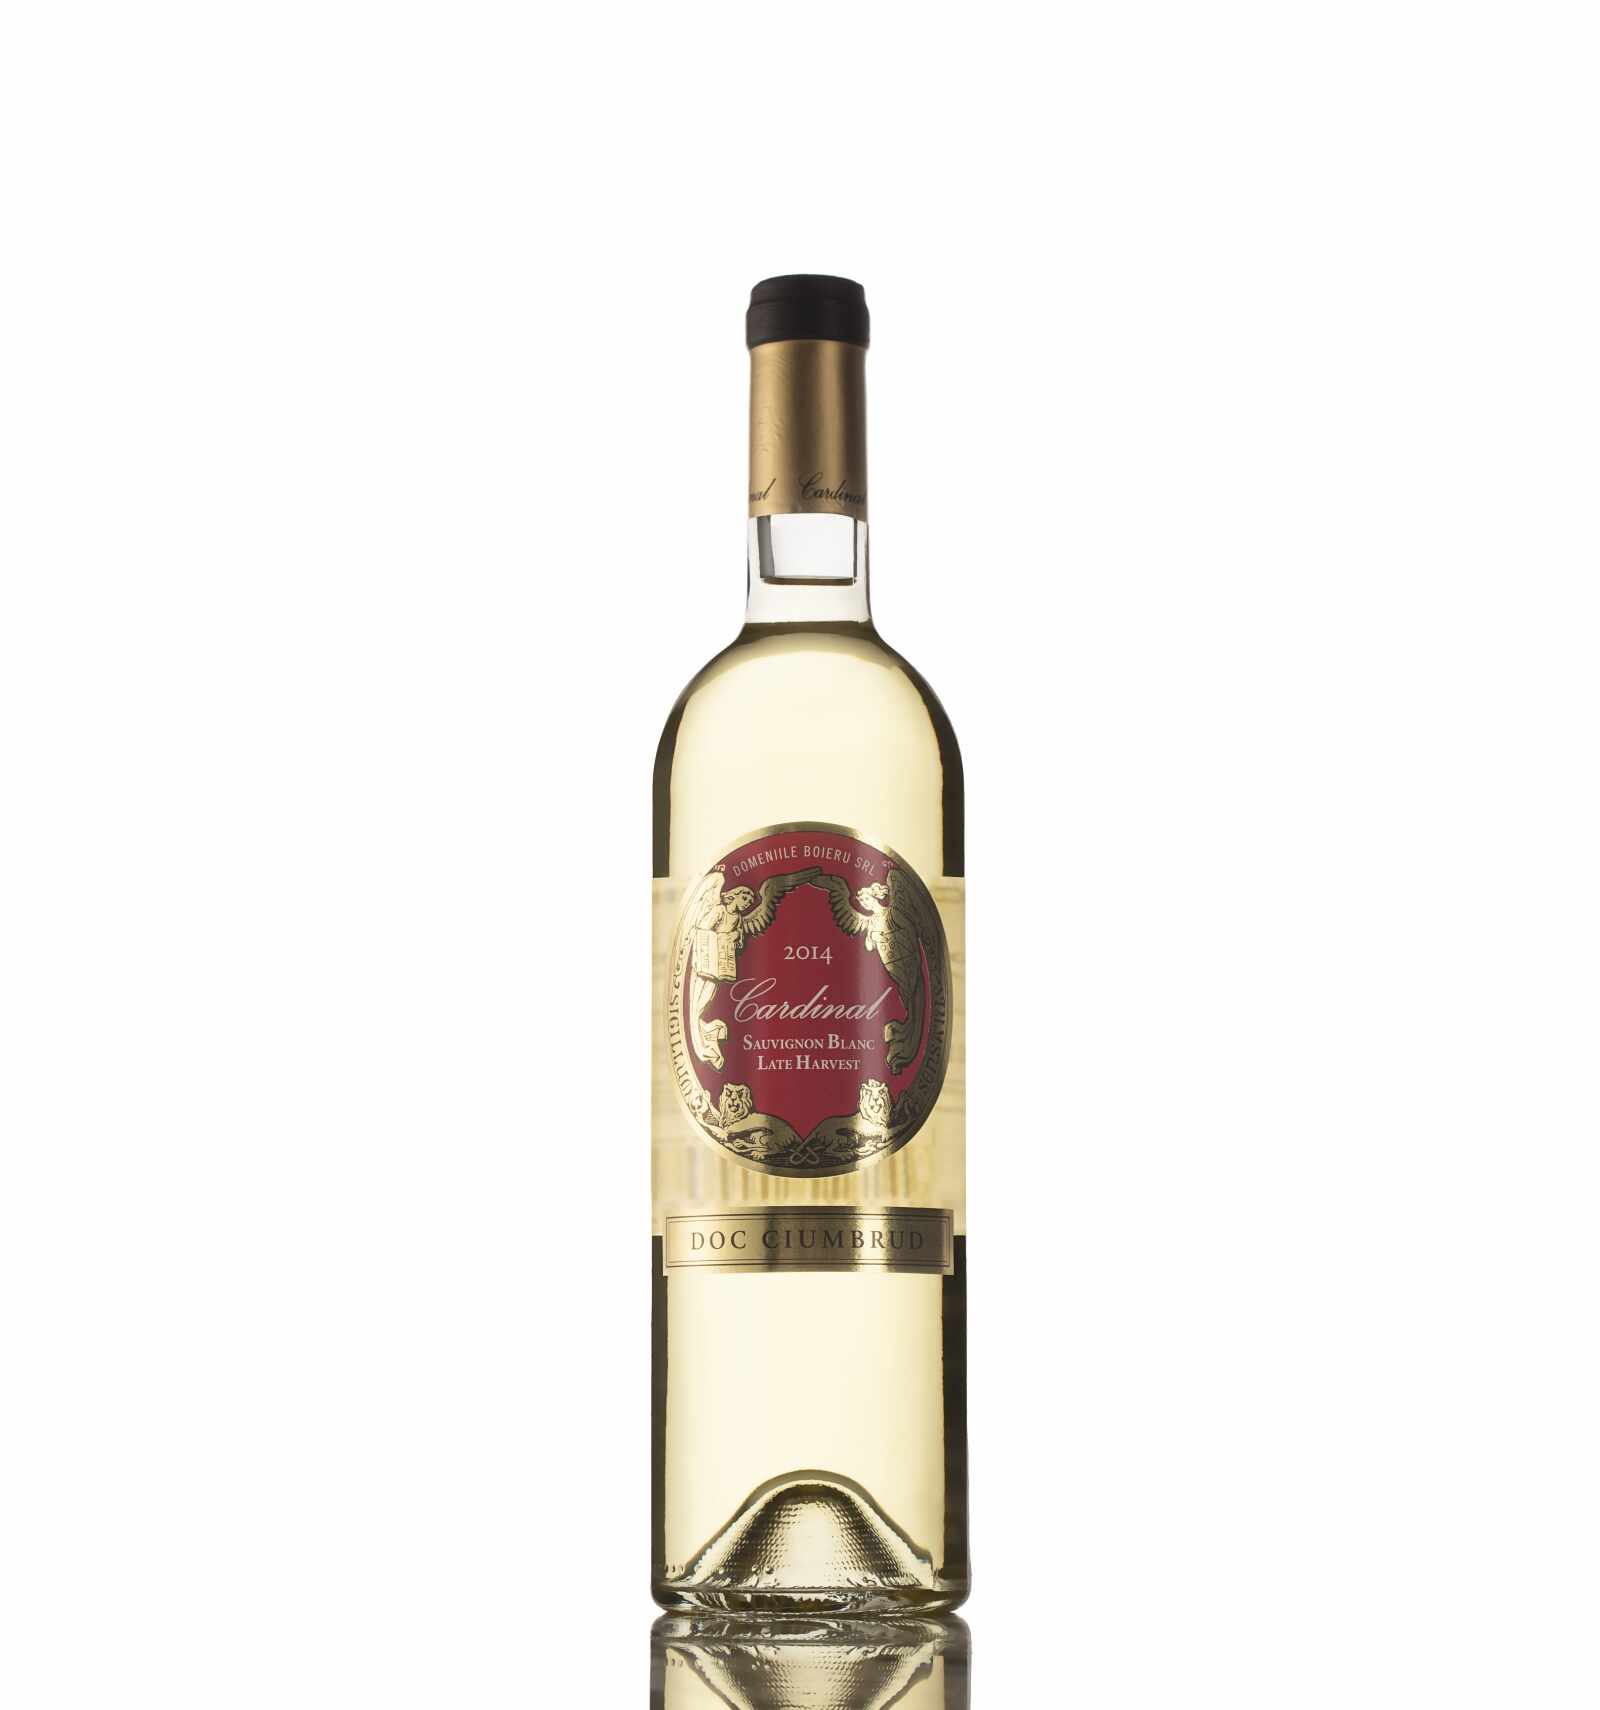 Vin alb demidulce, Sauvignon Blanc, Cardinal, Ciumbrud, 13% alc., 0.75L, Romania